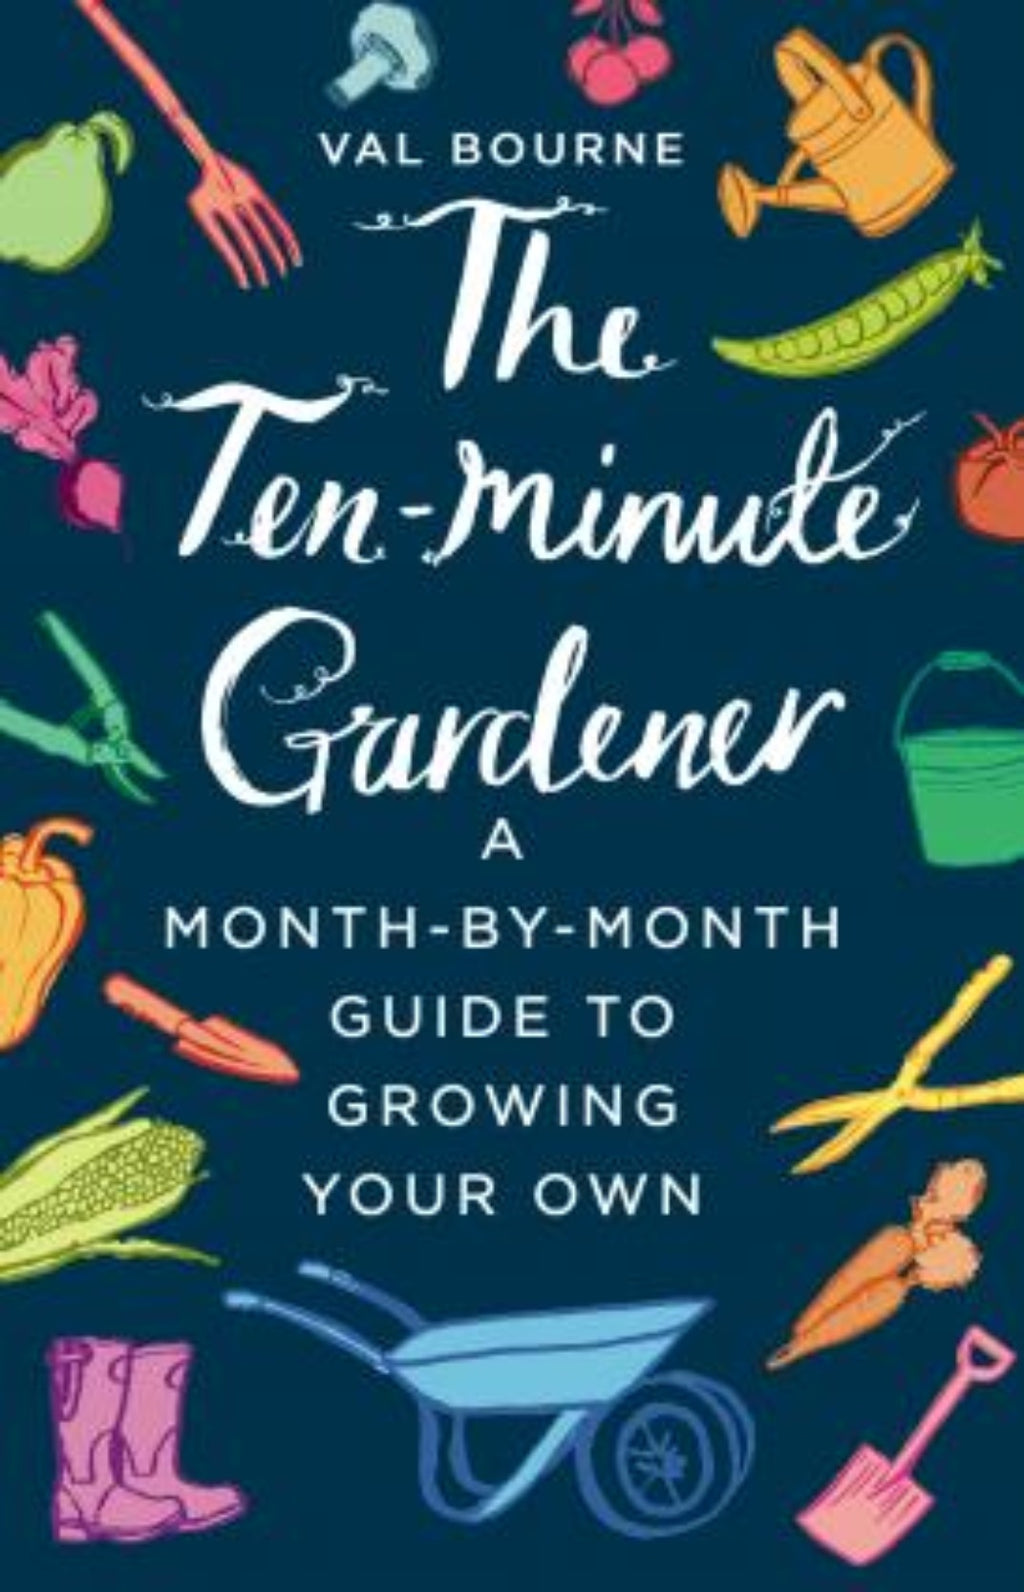 The Ten Minute Gardener